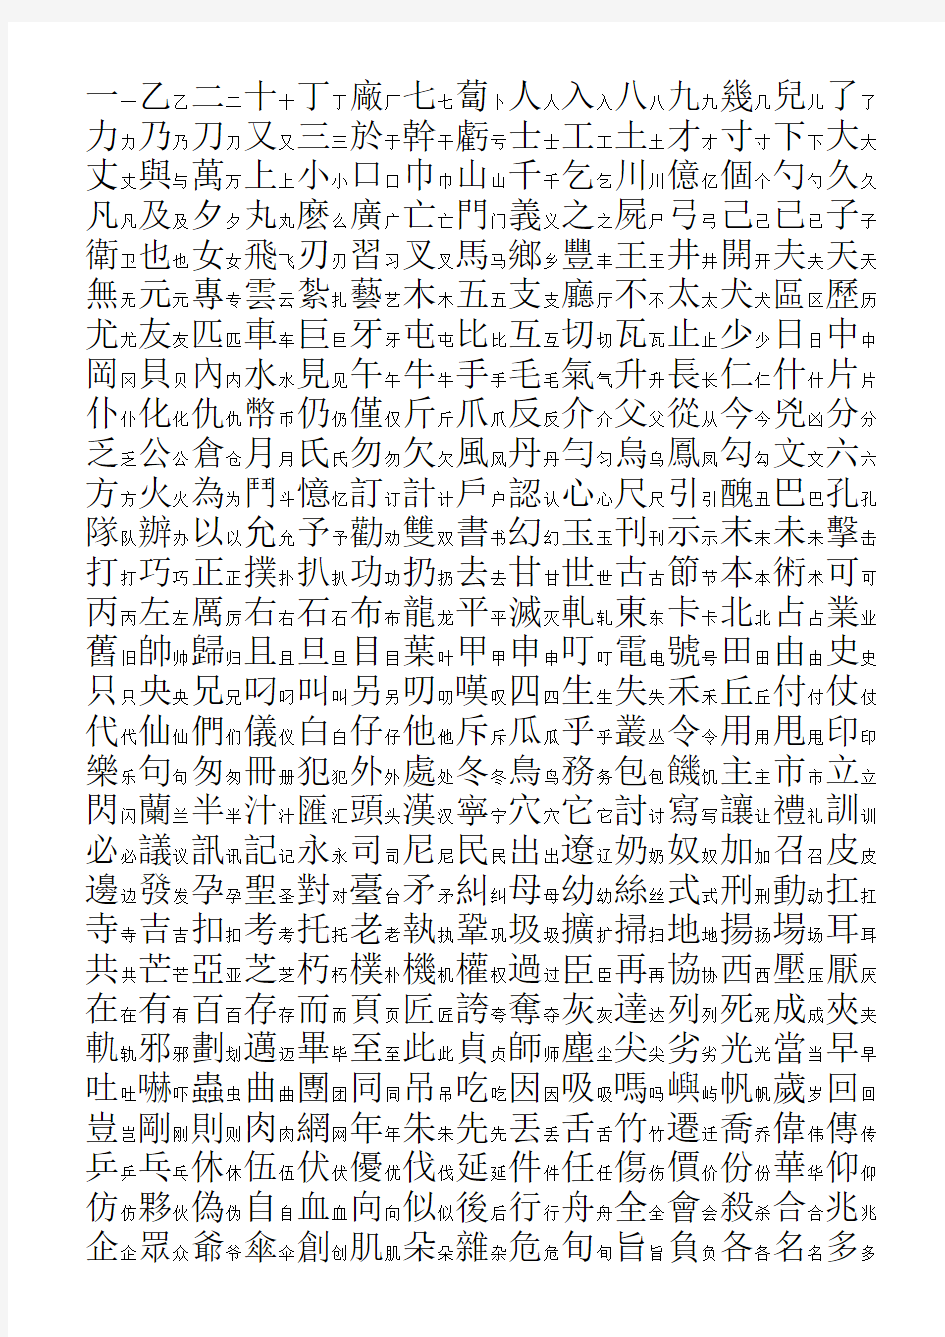 3500个常用汉字简繁对照表-笔画顺序-楷体